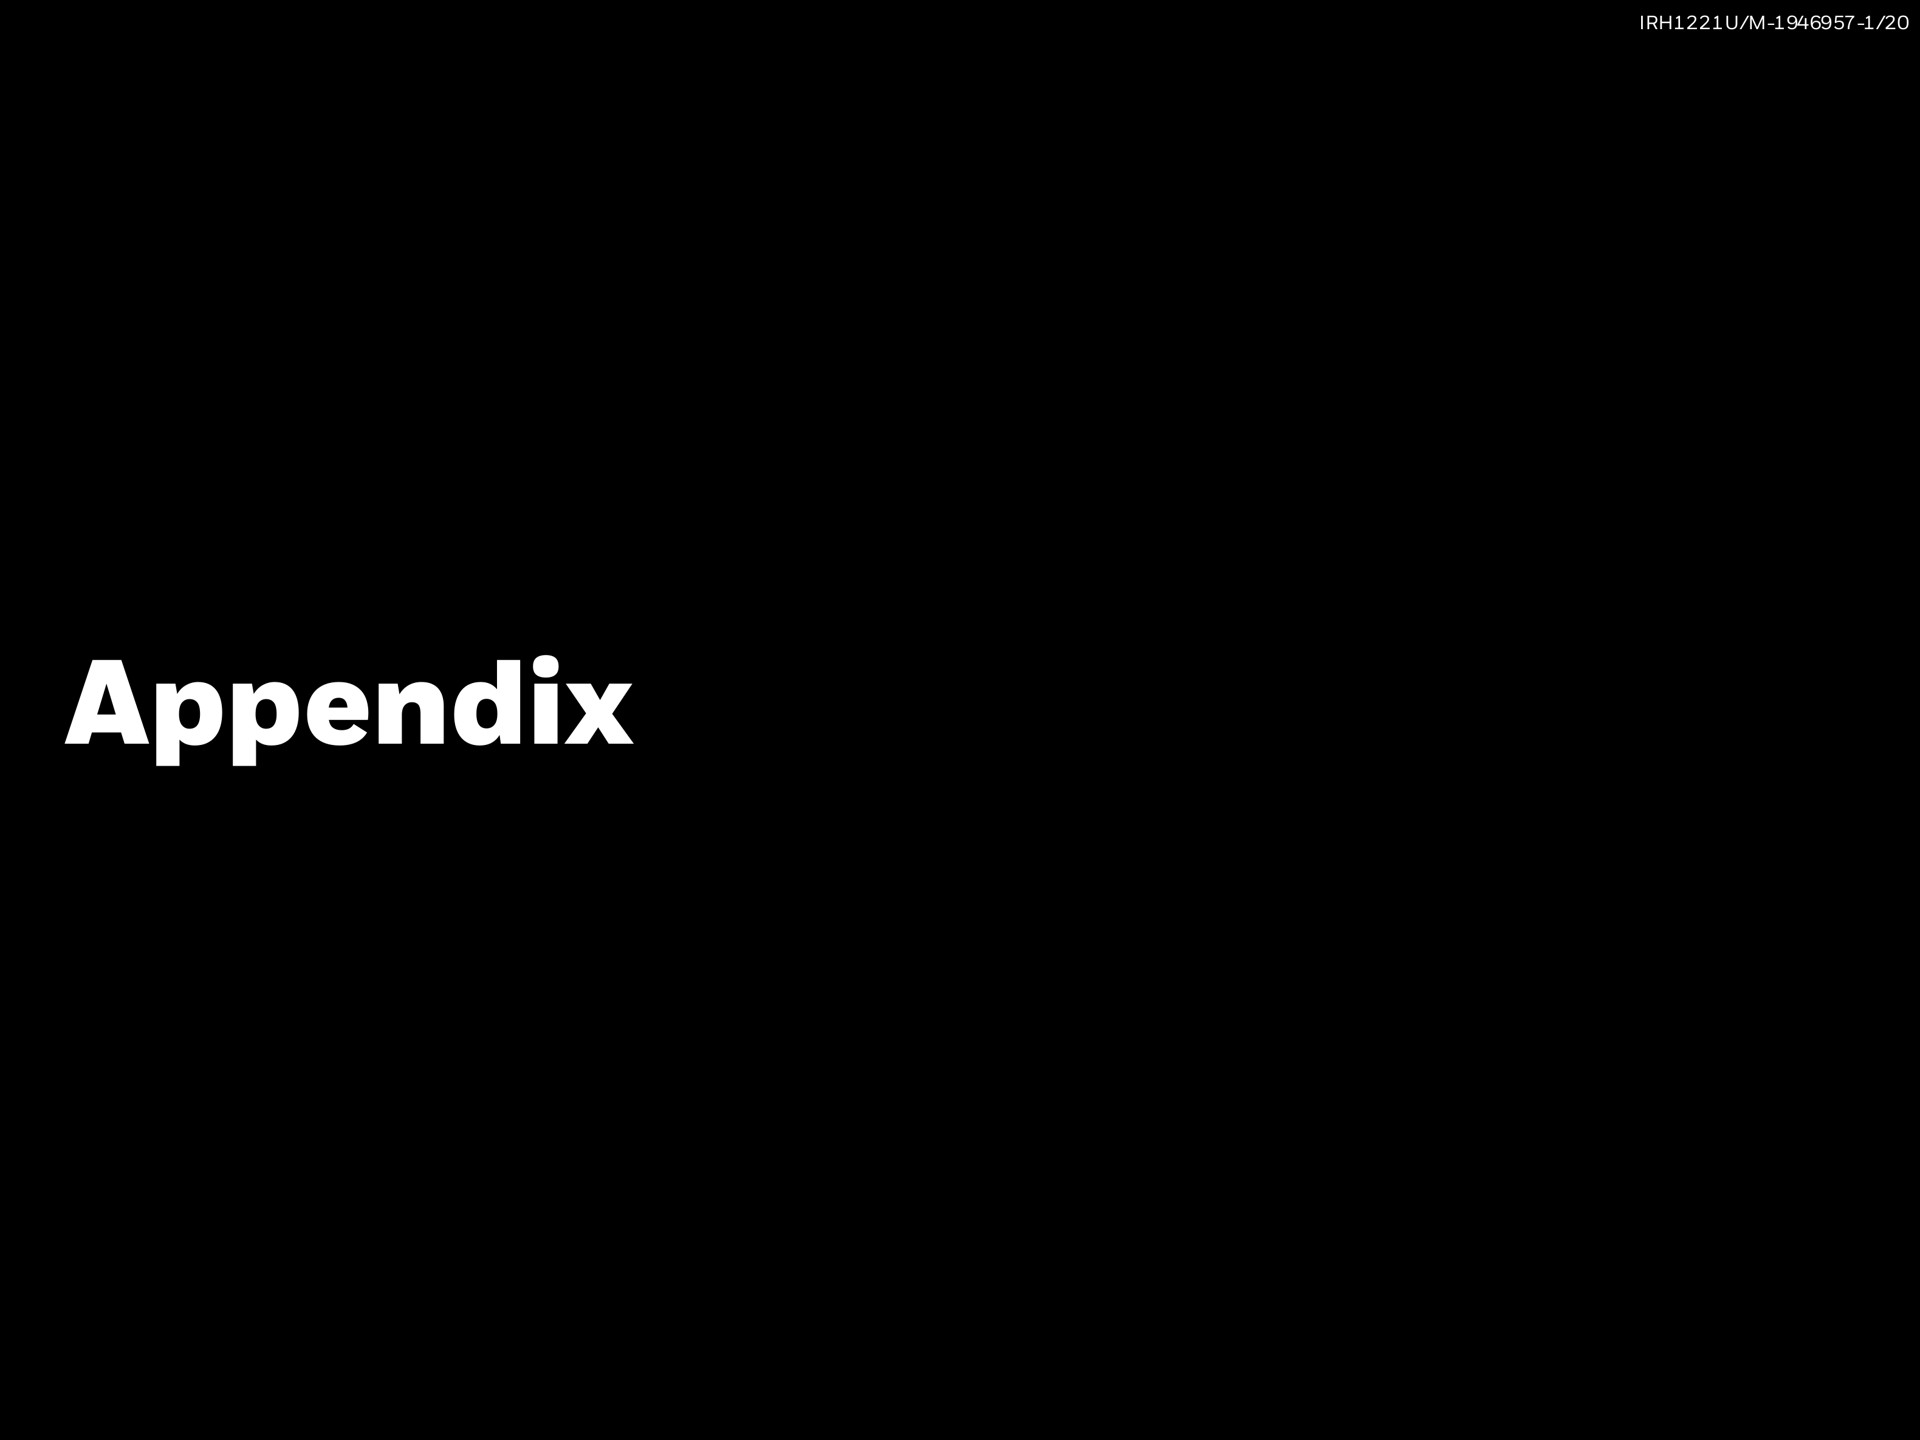 appendix | BlackRock